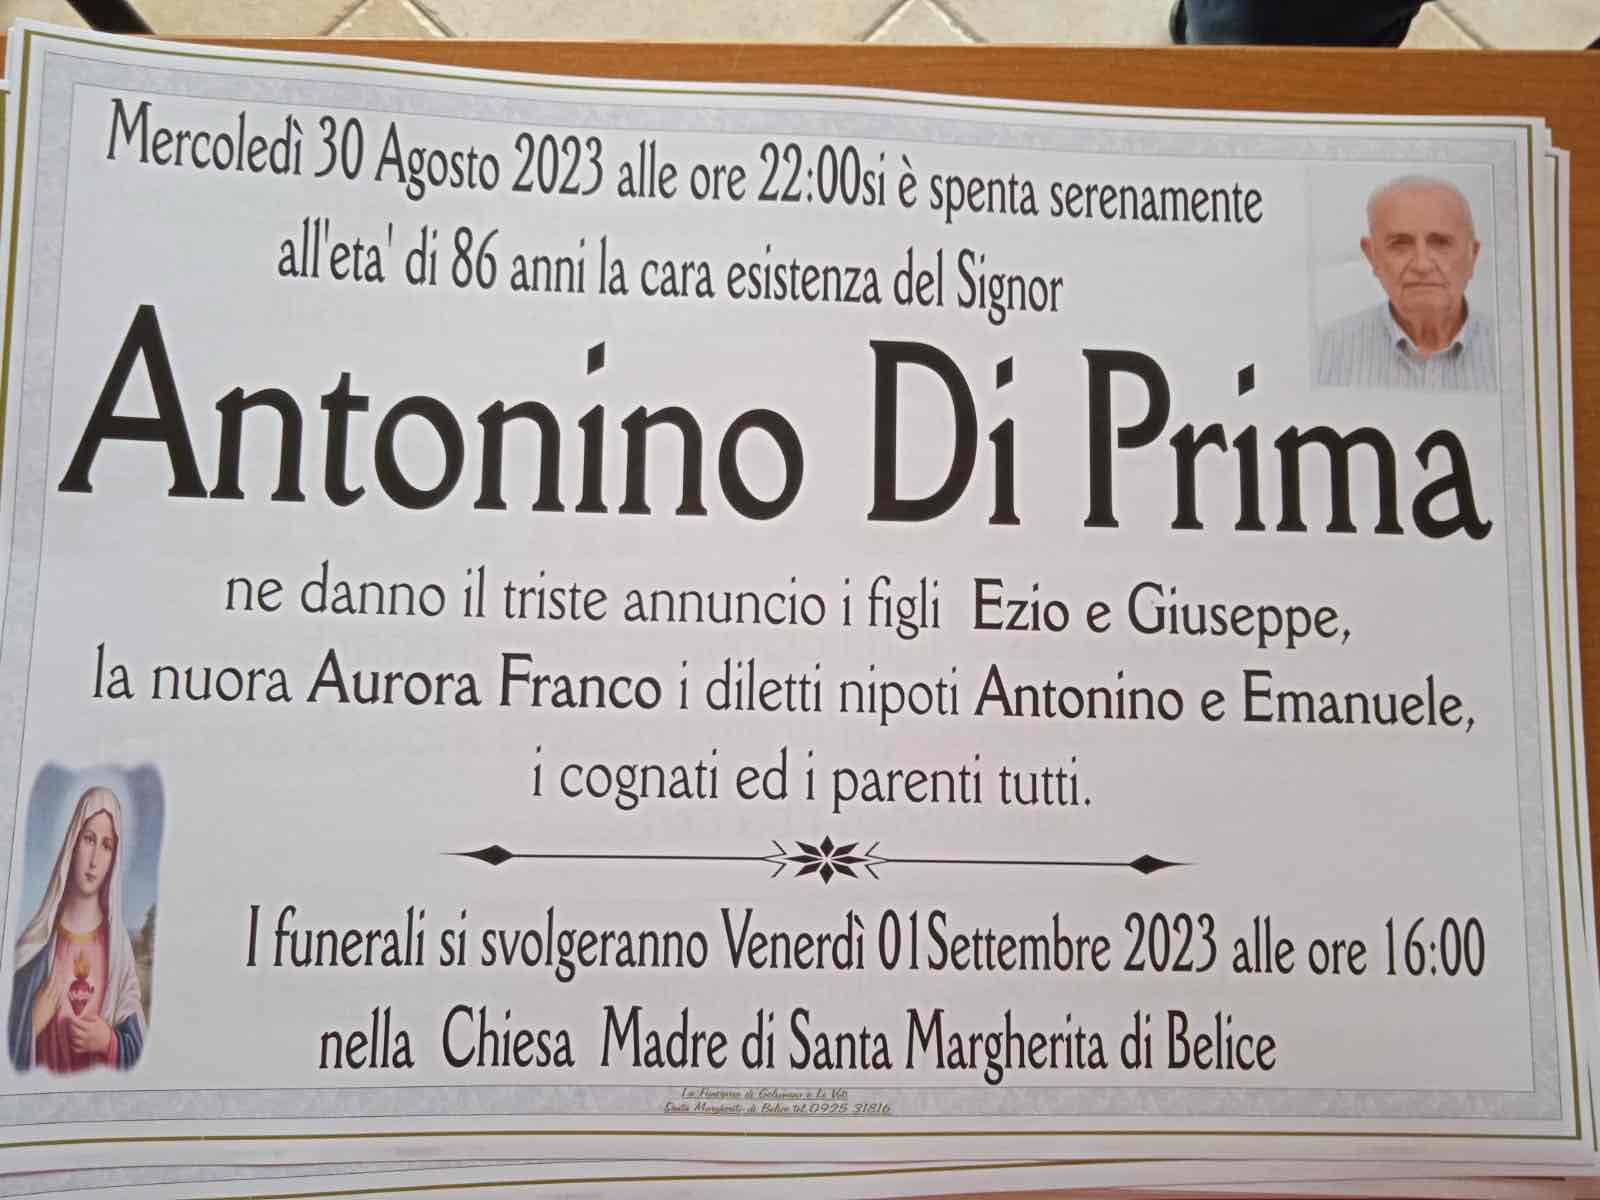 Antonino Di Prima